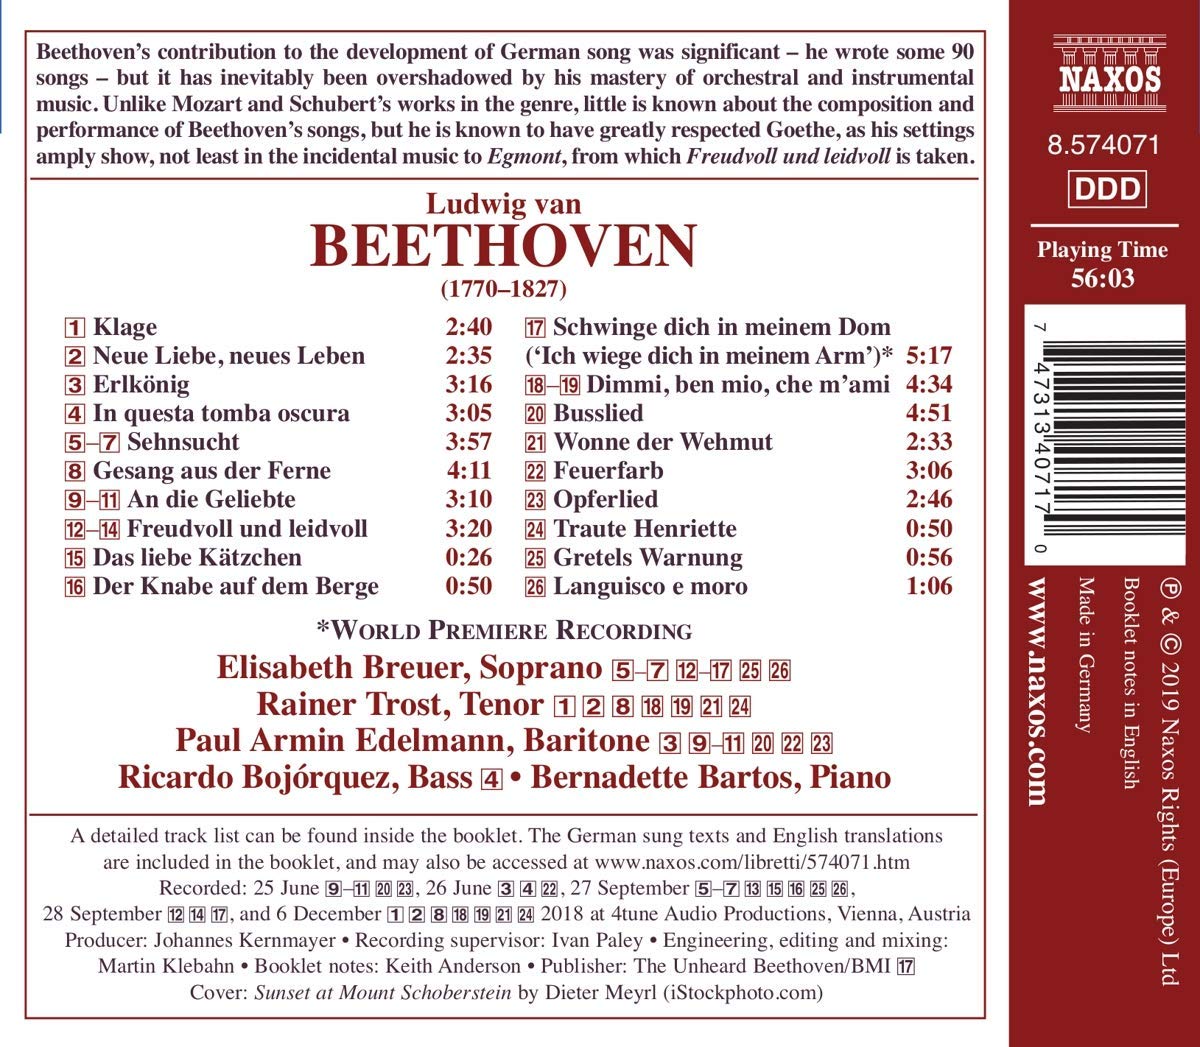 Elisabeth Breuer 베토벤: 가곡 1집 (Beethoven: Lieder, Vol. 1)